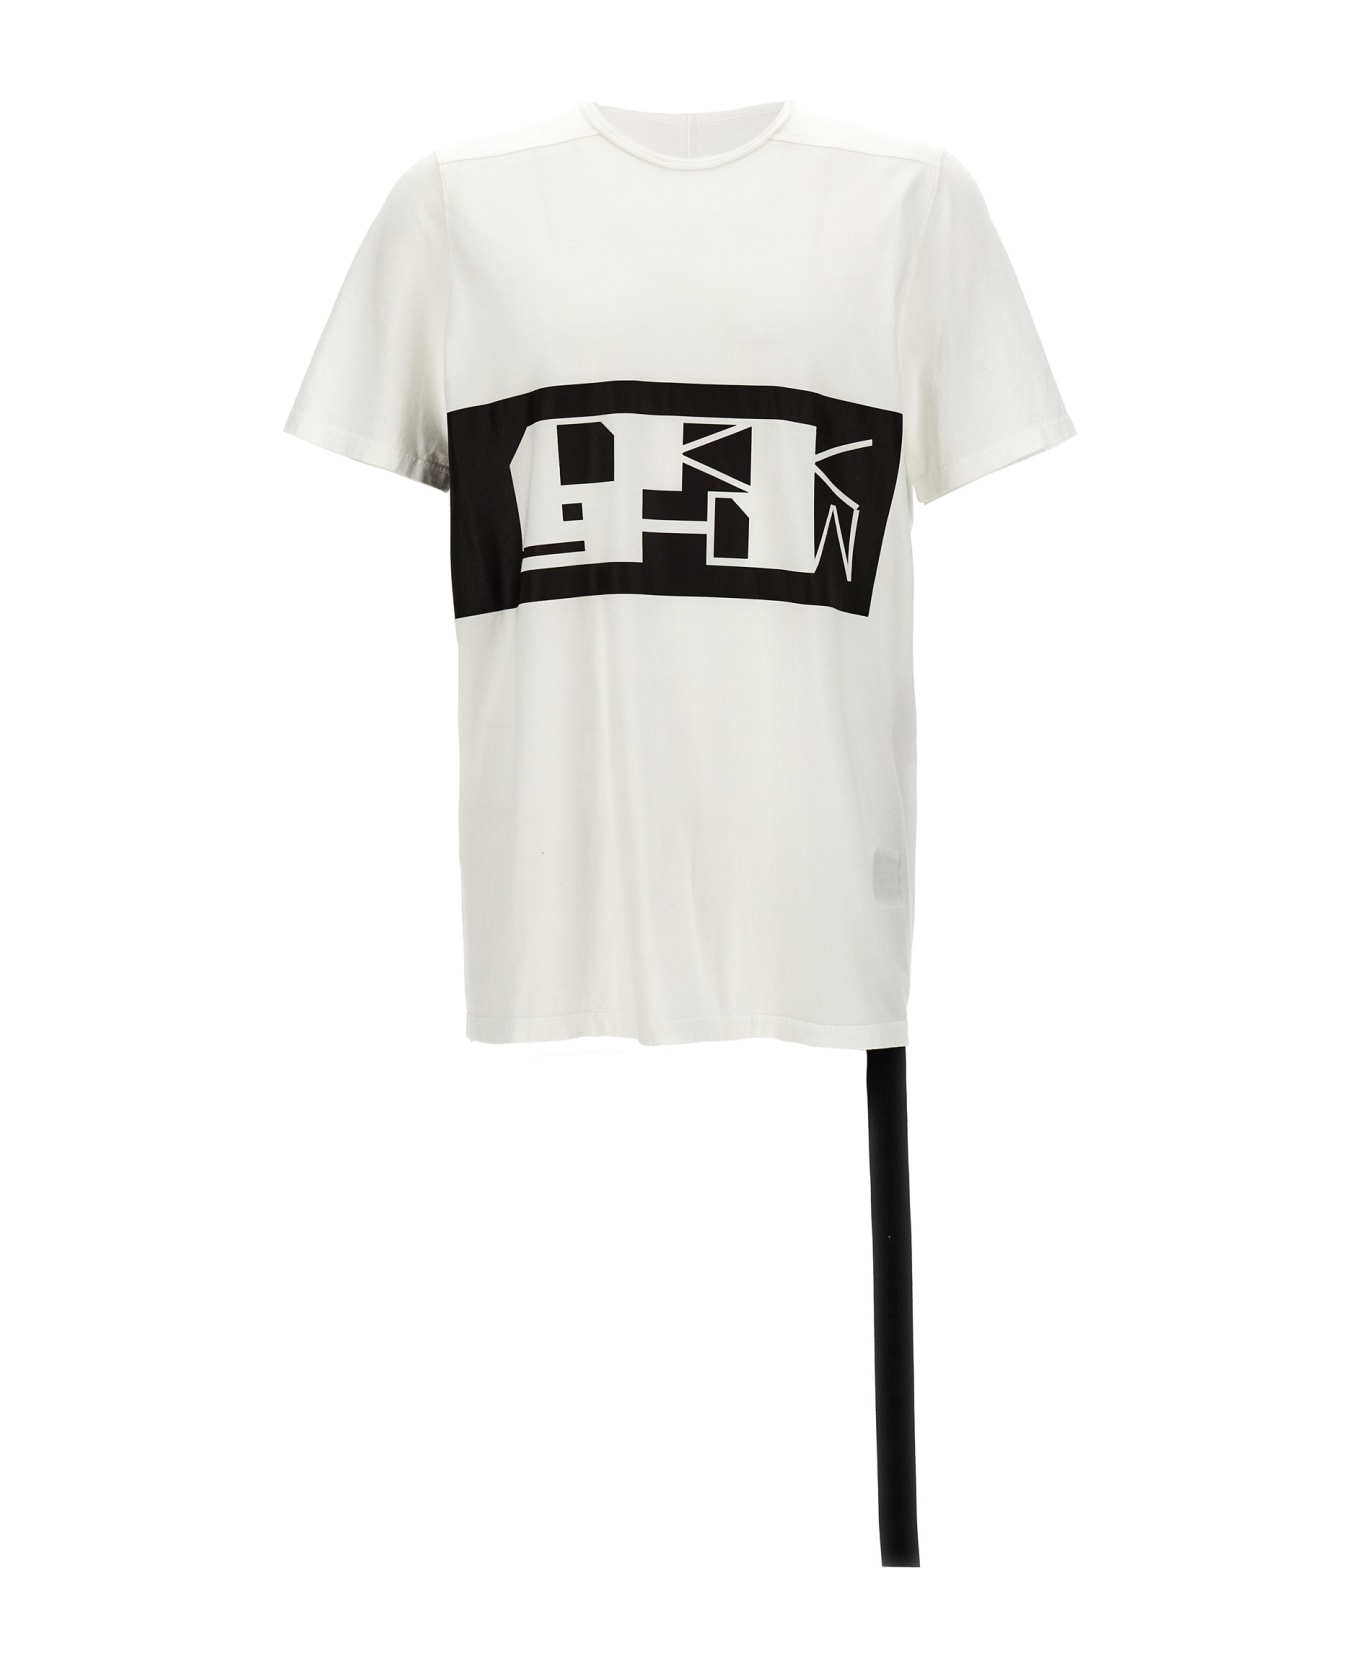 DRKSHDW 'level T' T-shirt - White/Black